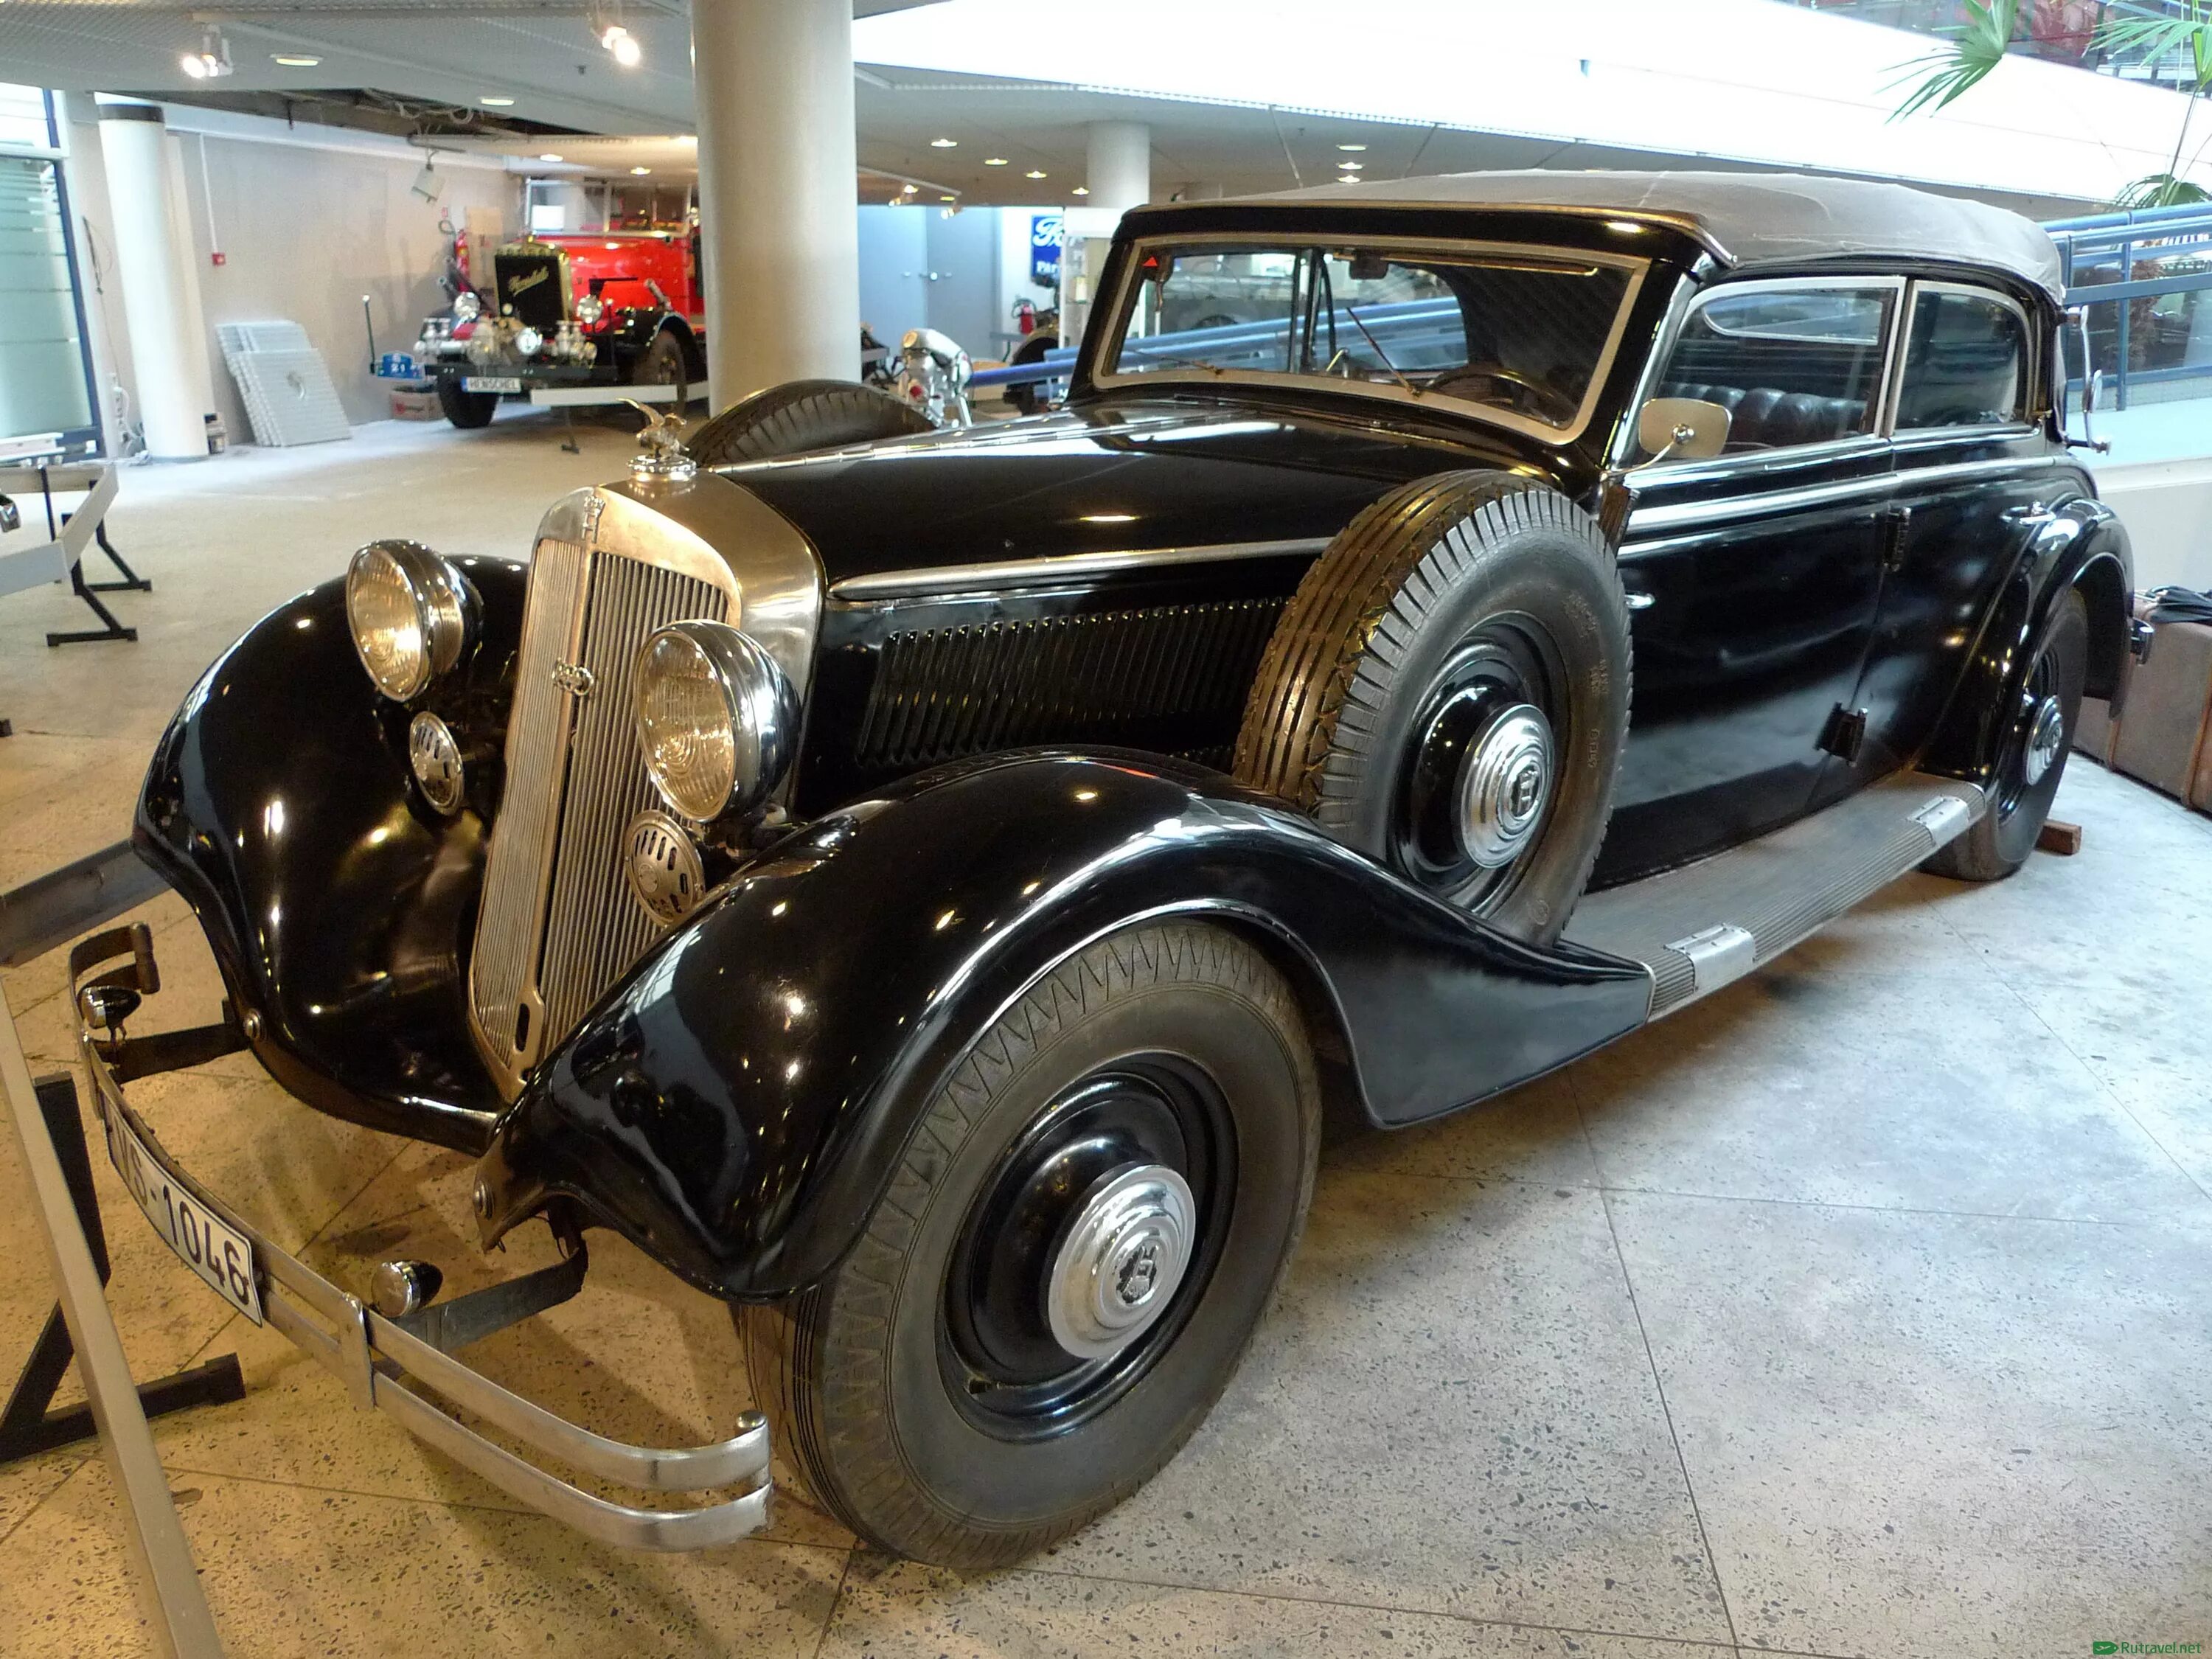 Магазин старых автомобилей. Музей ретро автомобилей. Выставка ретро автомобилей. Музей старинных машин в Москве. Музей ретро автомобилей СПБ.